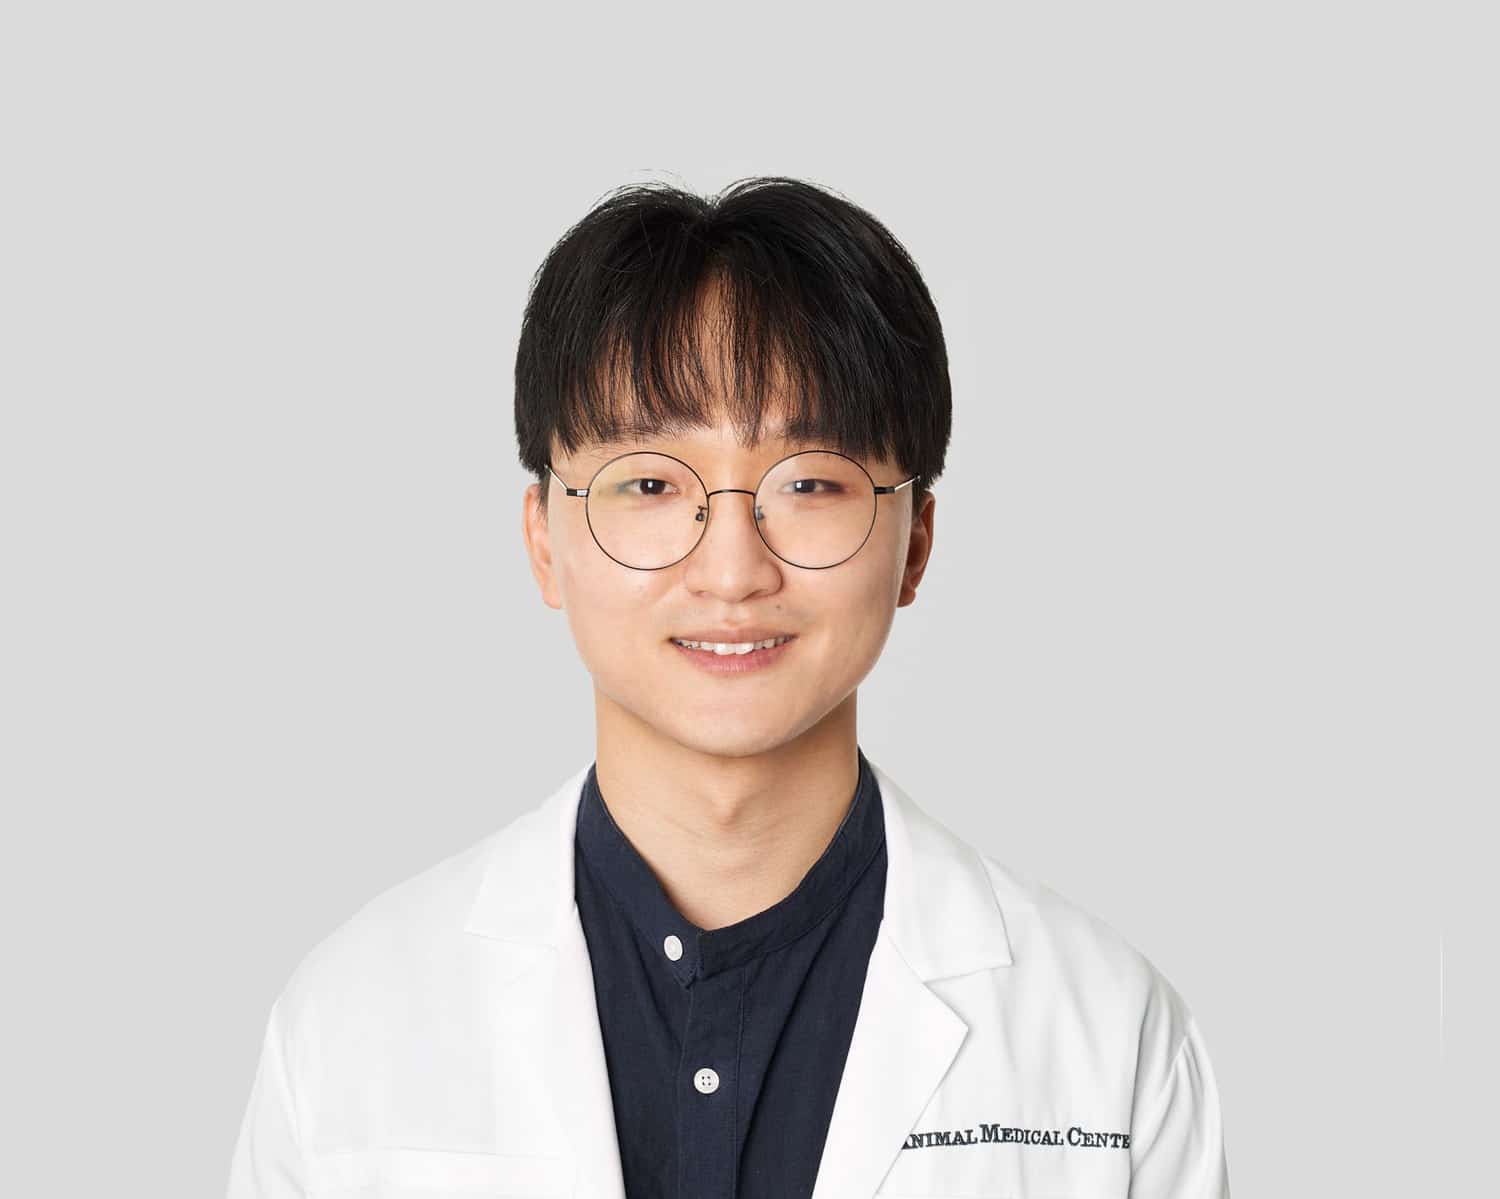 Dr. Josh Chang